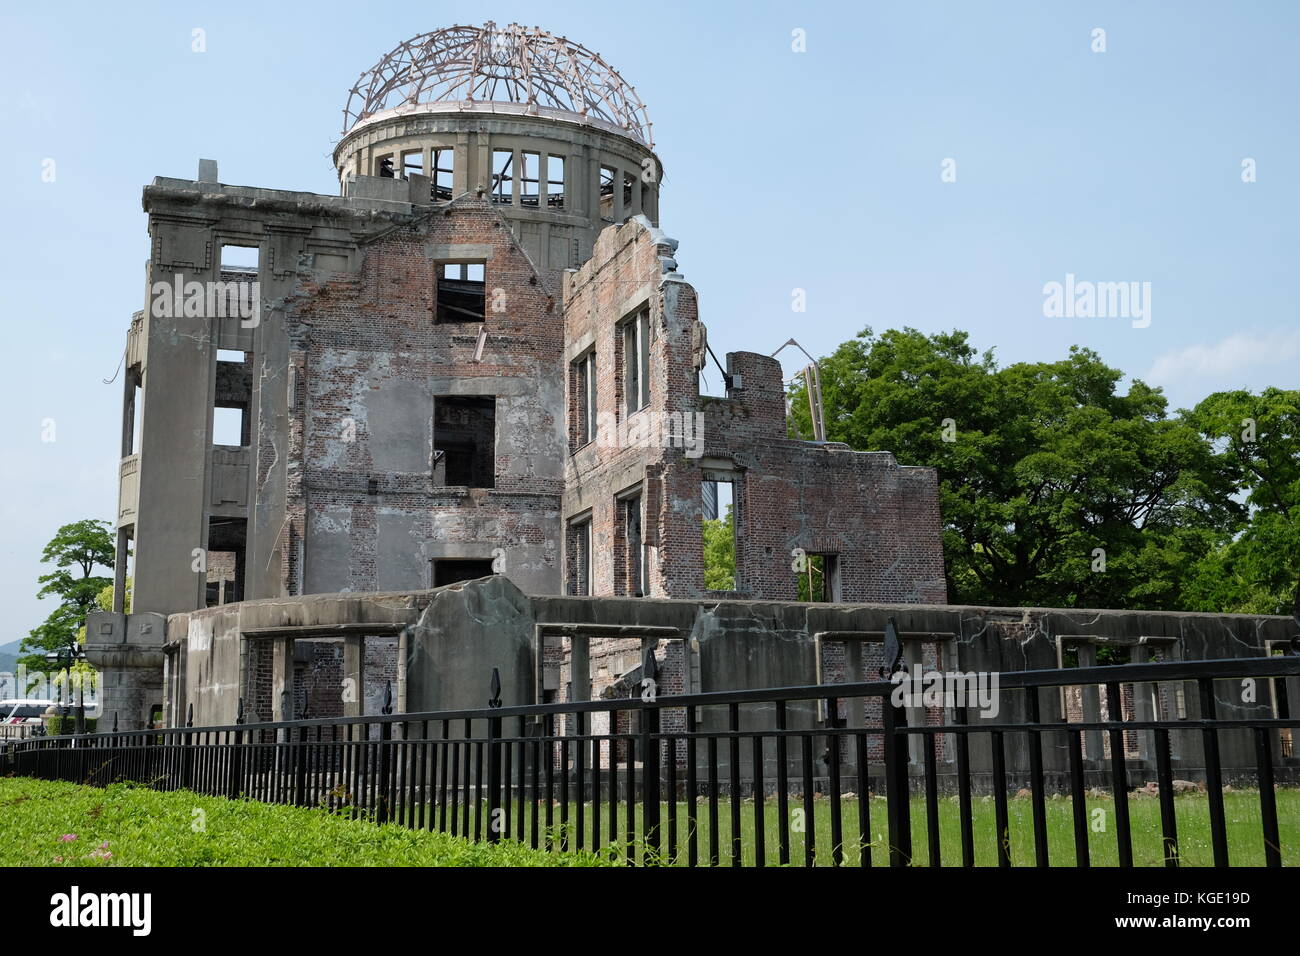 Le dôme de la bombe atomique est une ruine c'est un mémorial pour les morts à cause de la bombe atomique larguée sur Hiroshima, au Japon, le 6 août 1945. Banque D'Images